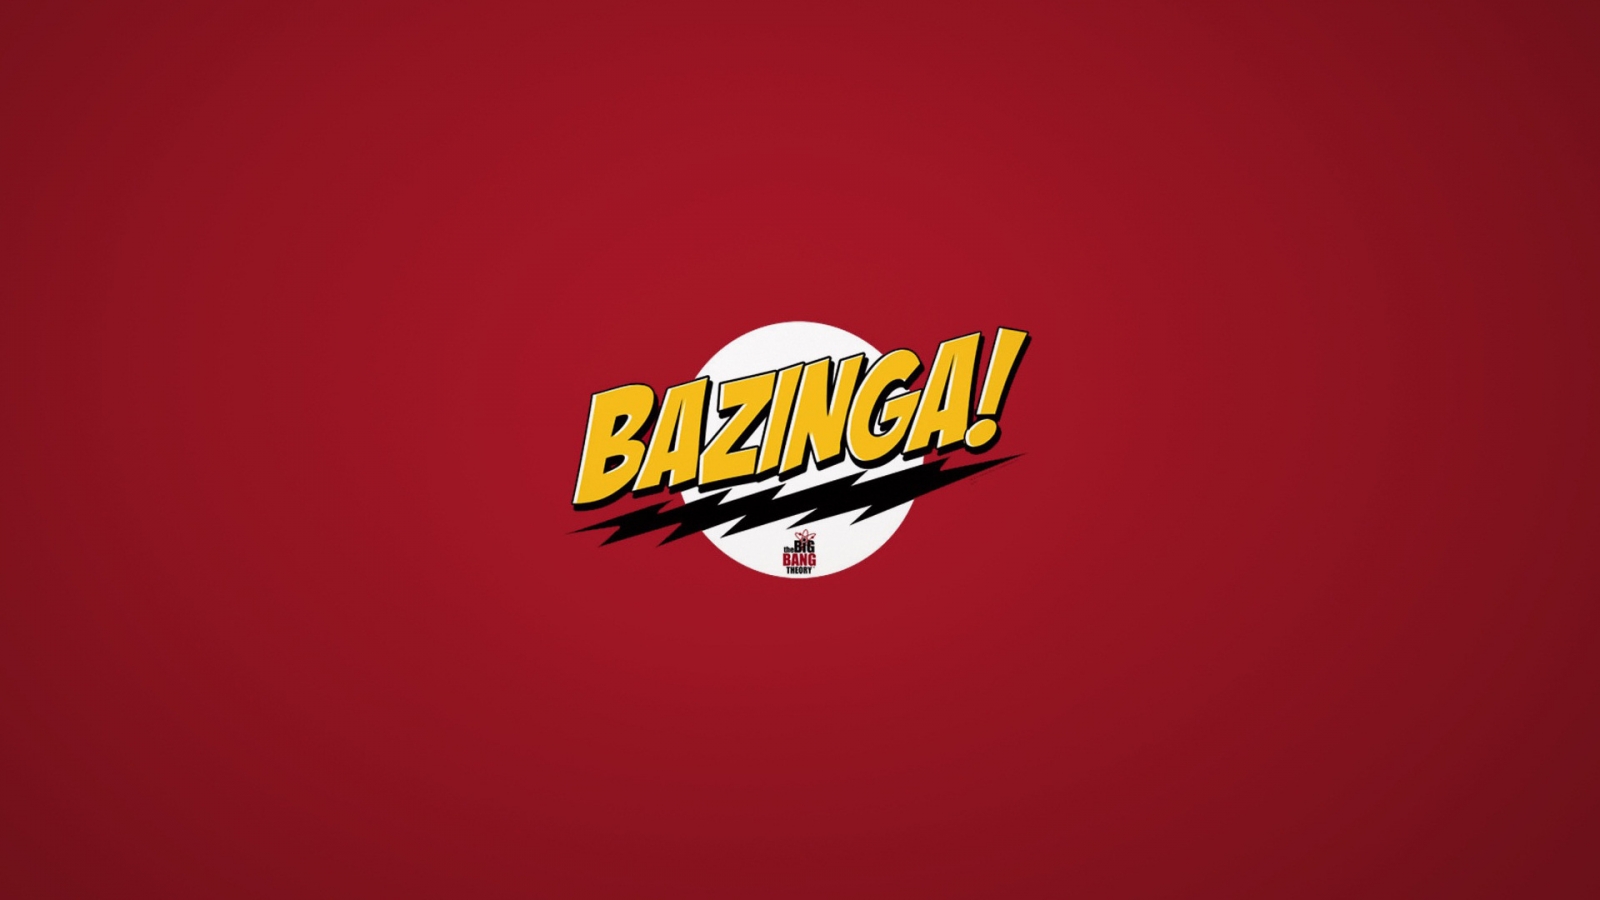 The Big Bang Theory Bazinga for 1600 x 900 HDTV resolution